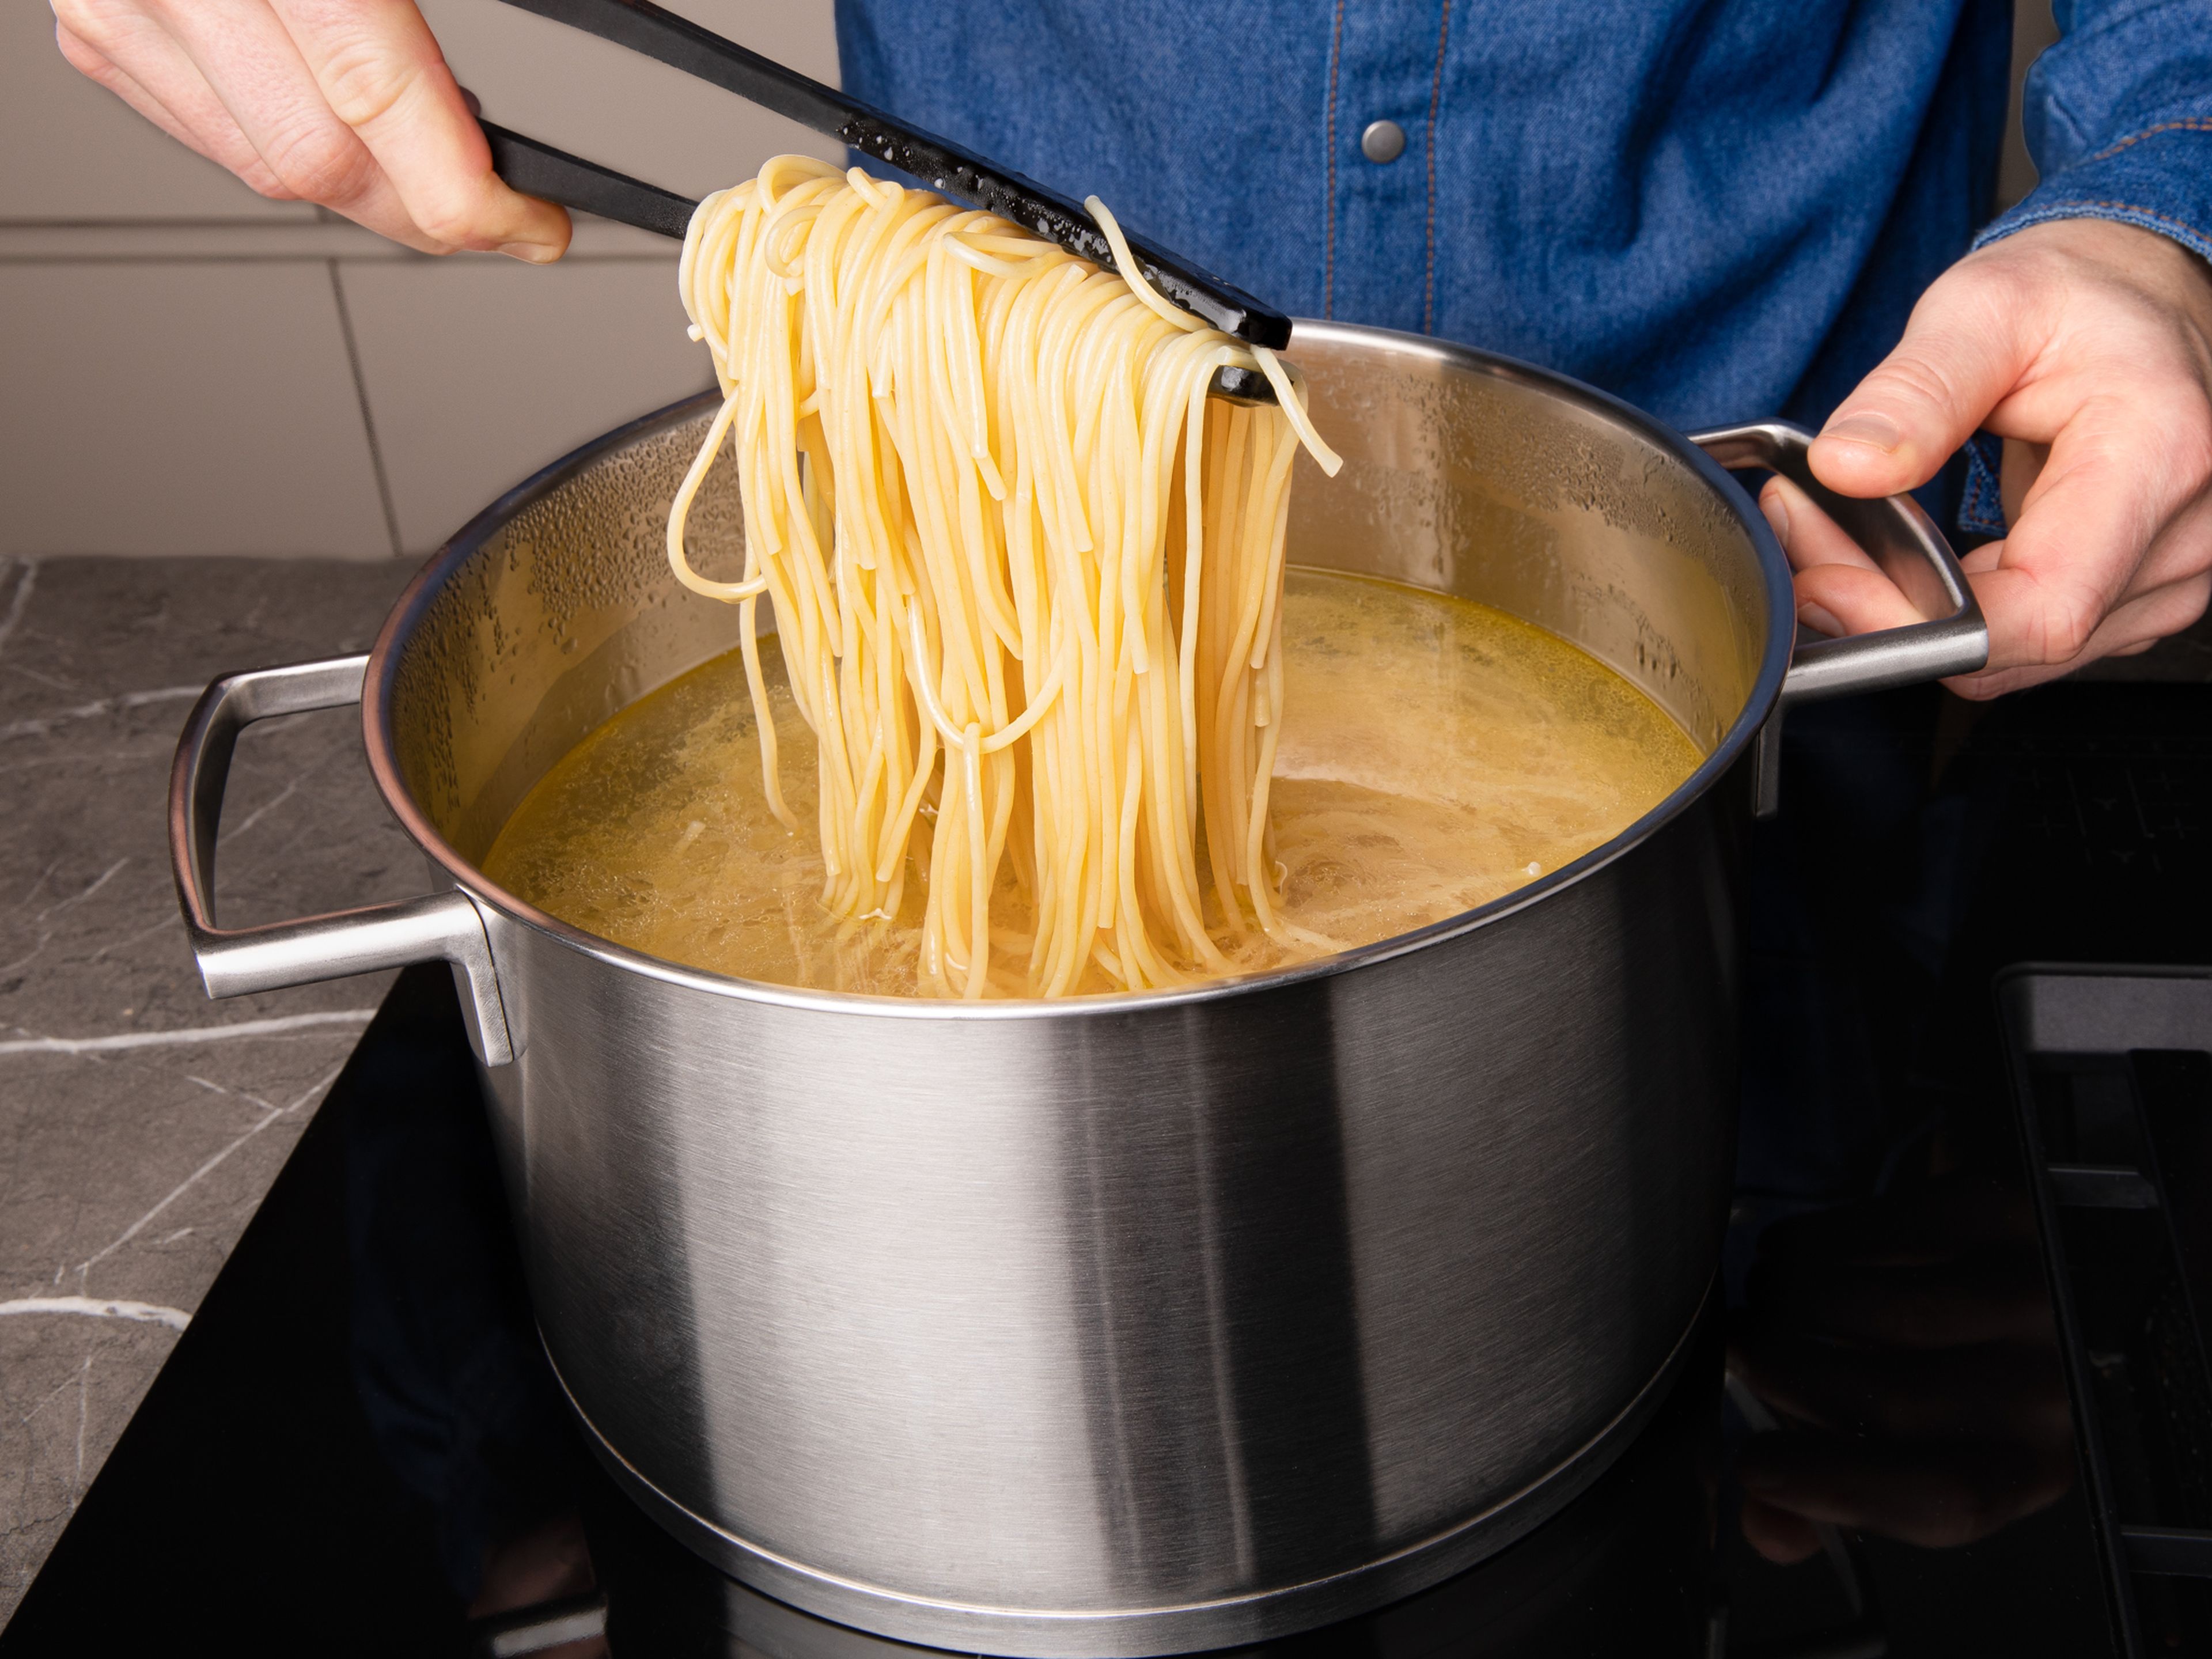 Gesalzenes Wasser in einem großen Topf zum Kochen bringen und die Spaghetti nach Packungsanleitung al dente kochen.